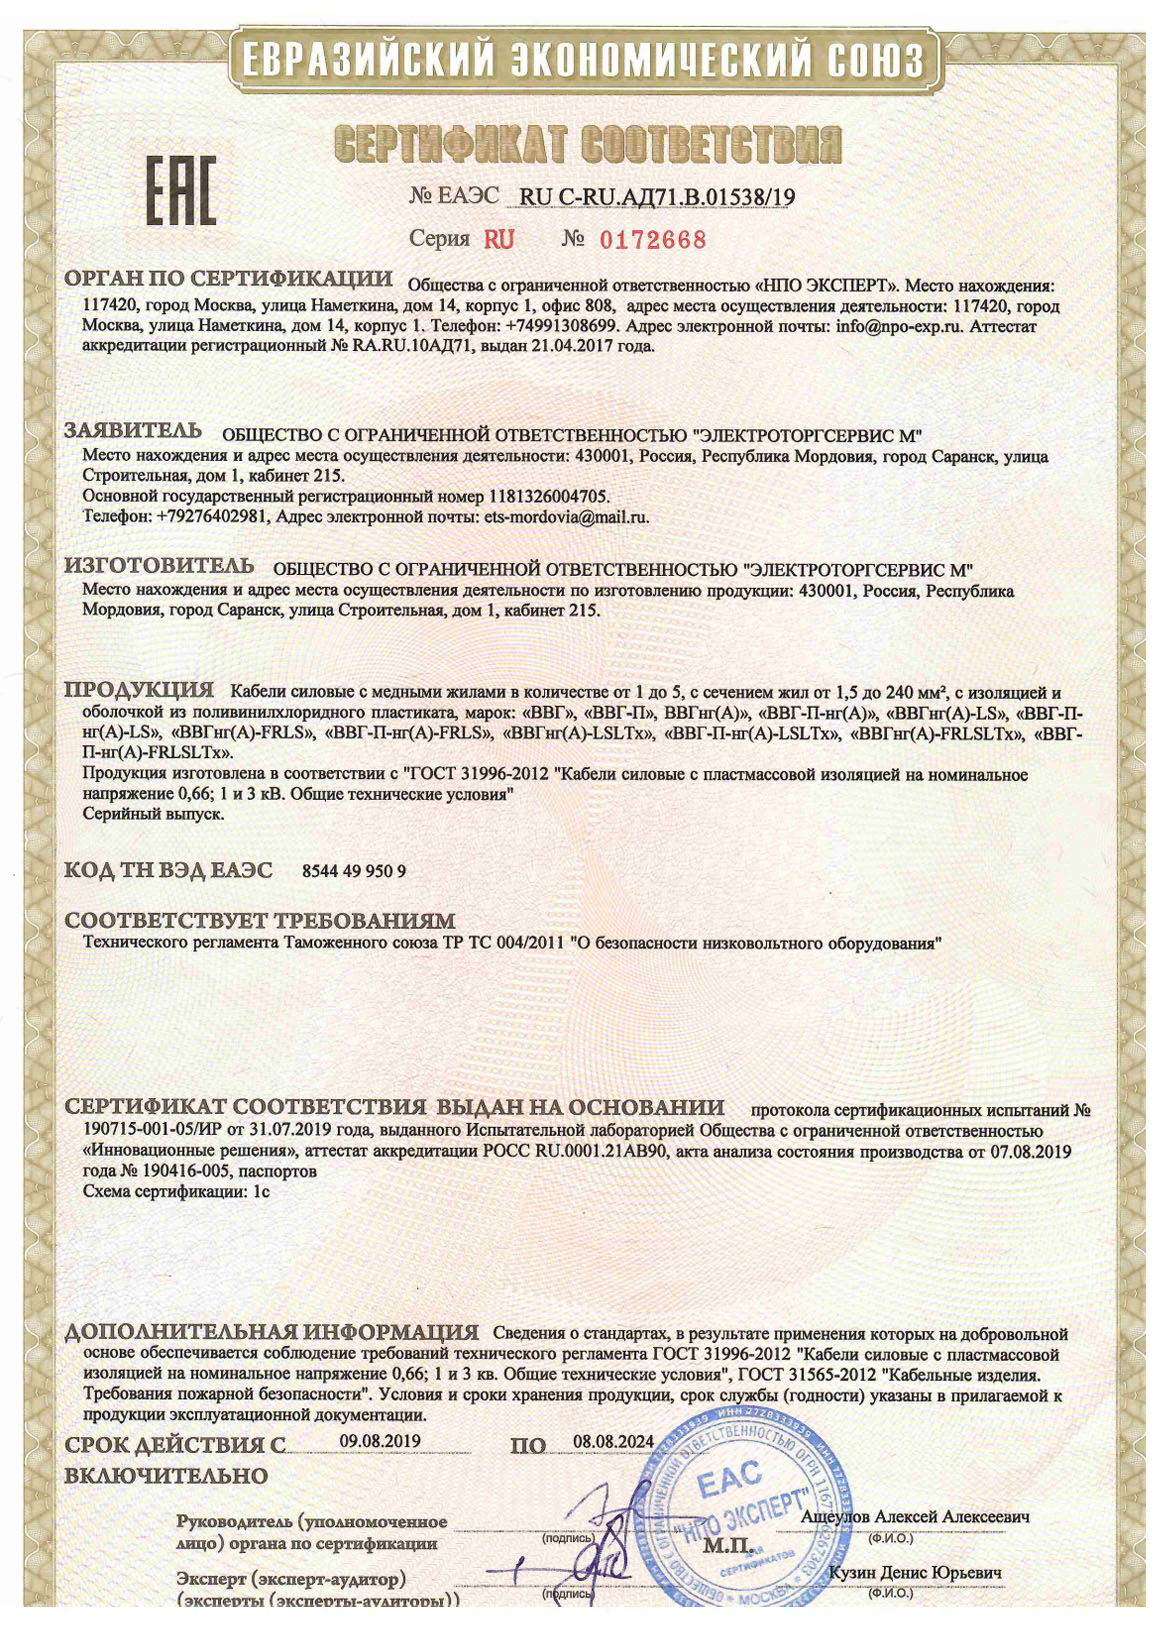 Сертификат соответствия № ЕАЭС RU C-RU.АД71.В.01538/19. Серия RU, №0172668